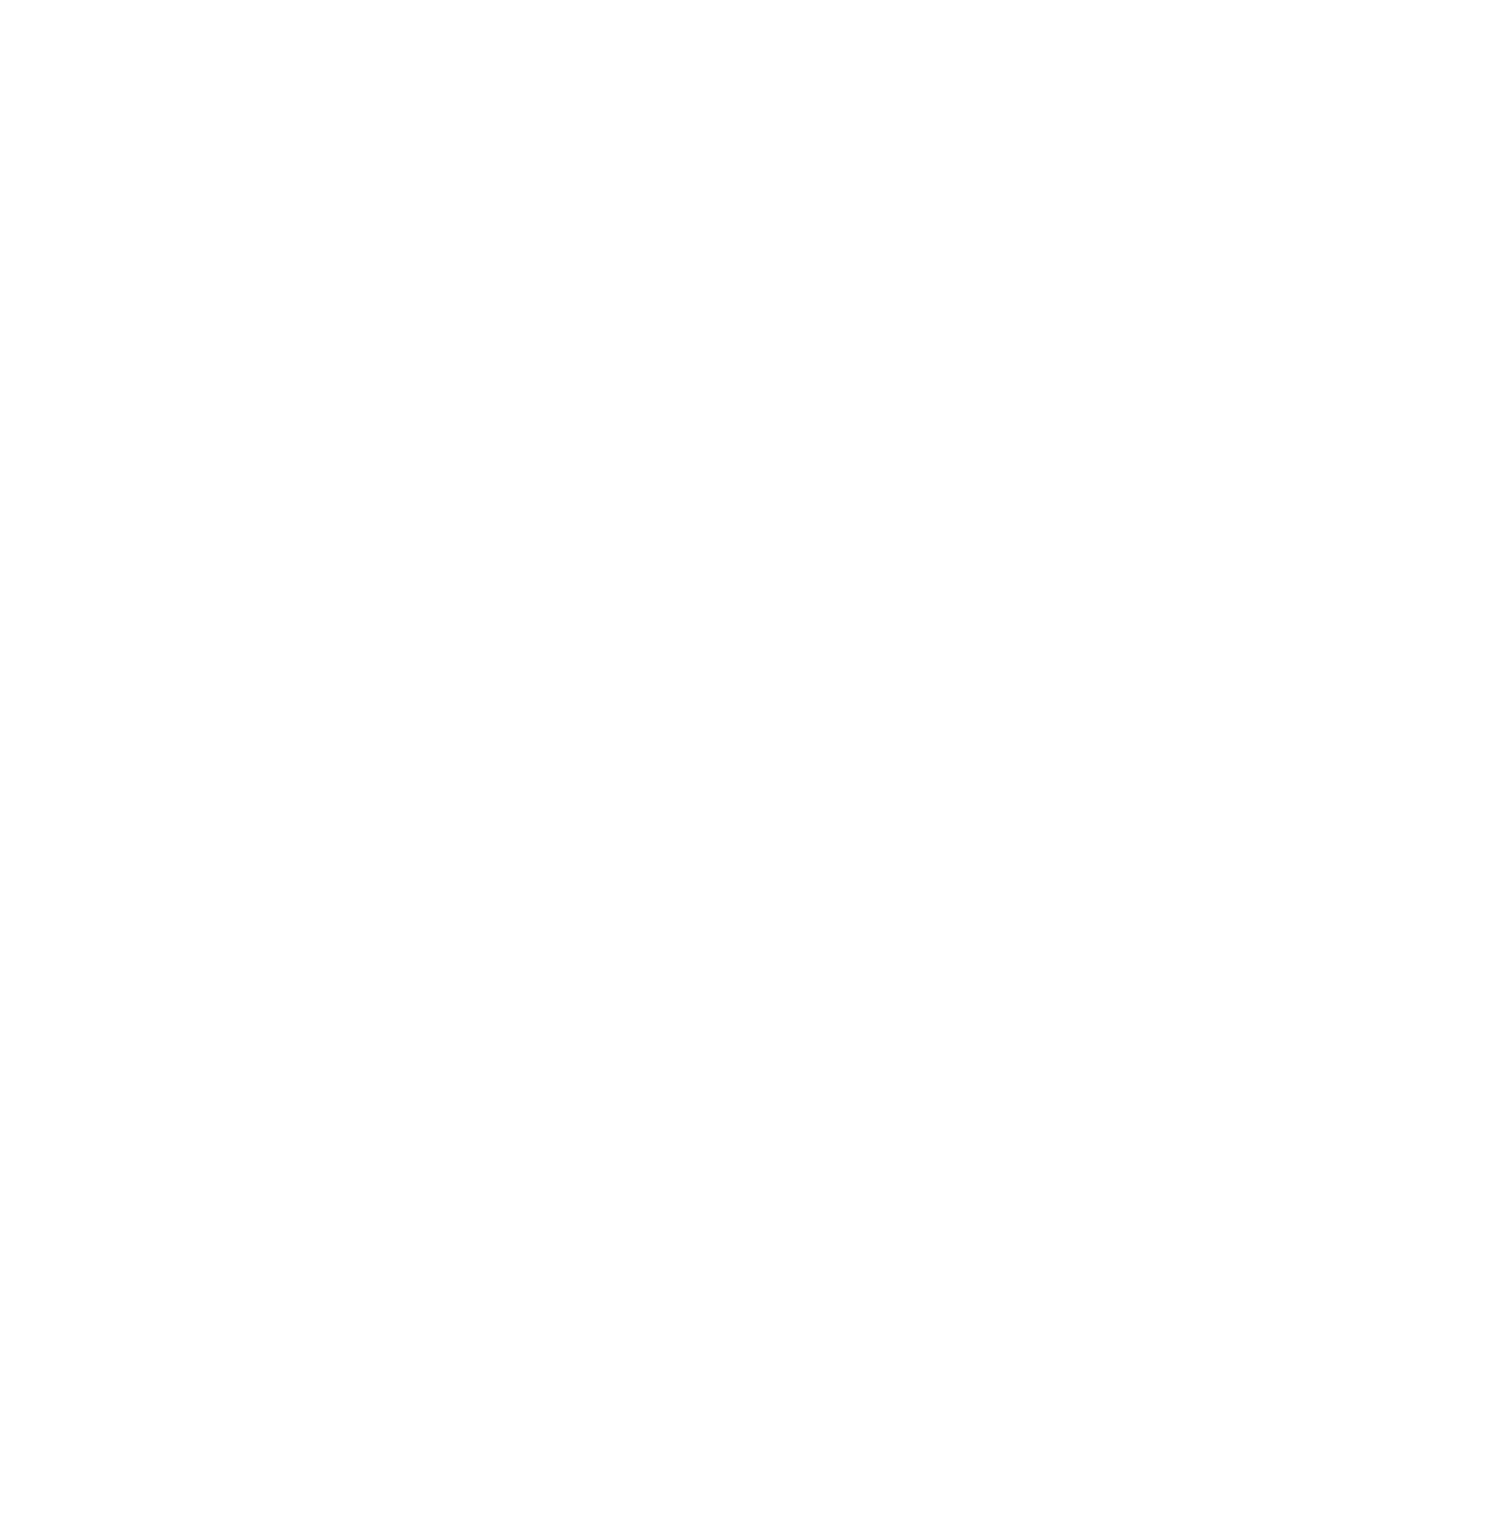 Krung Thai Bank logo pour fonds sombres (PNG transparent)